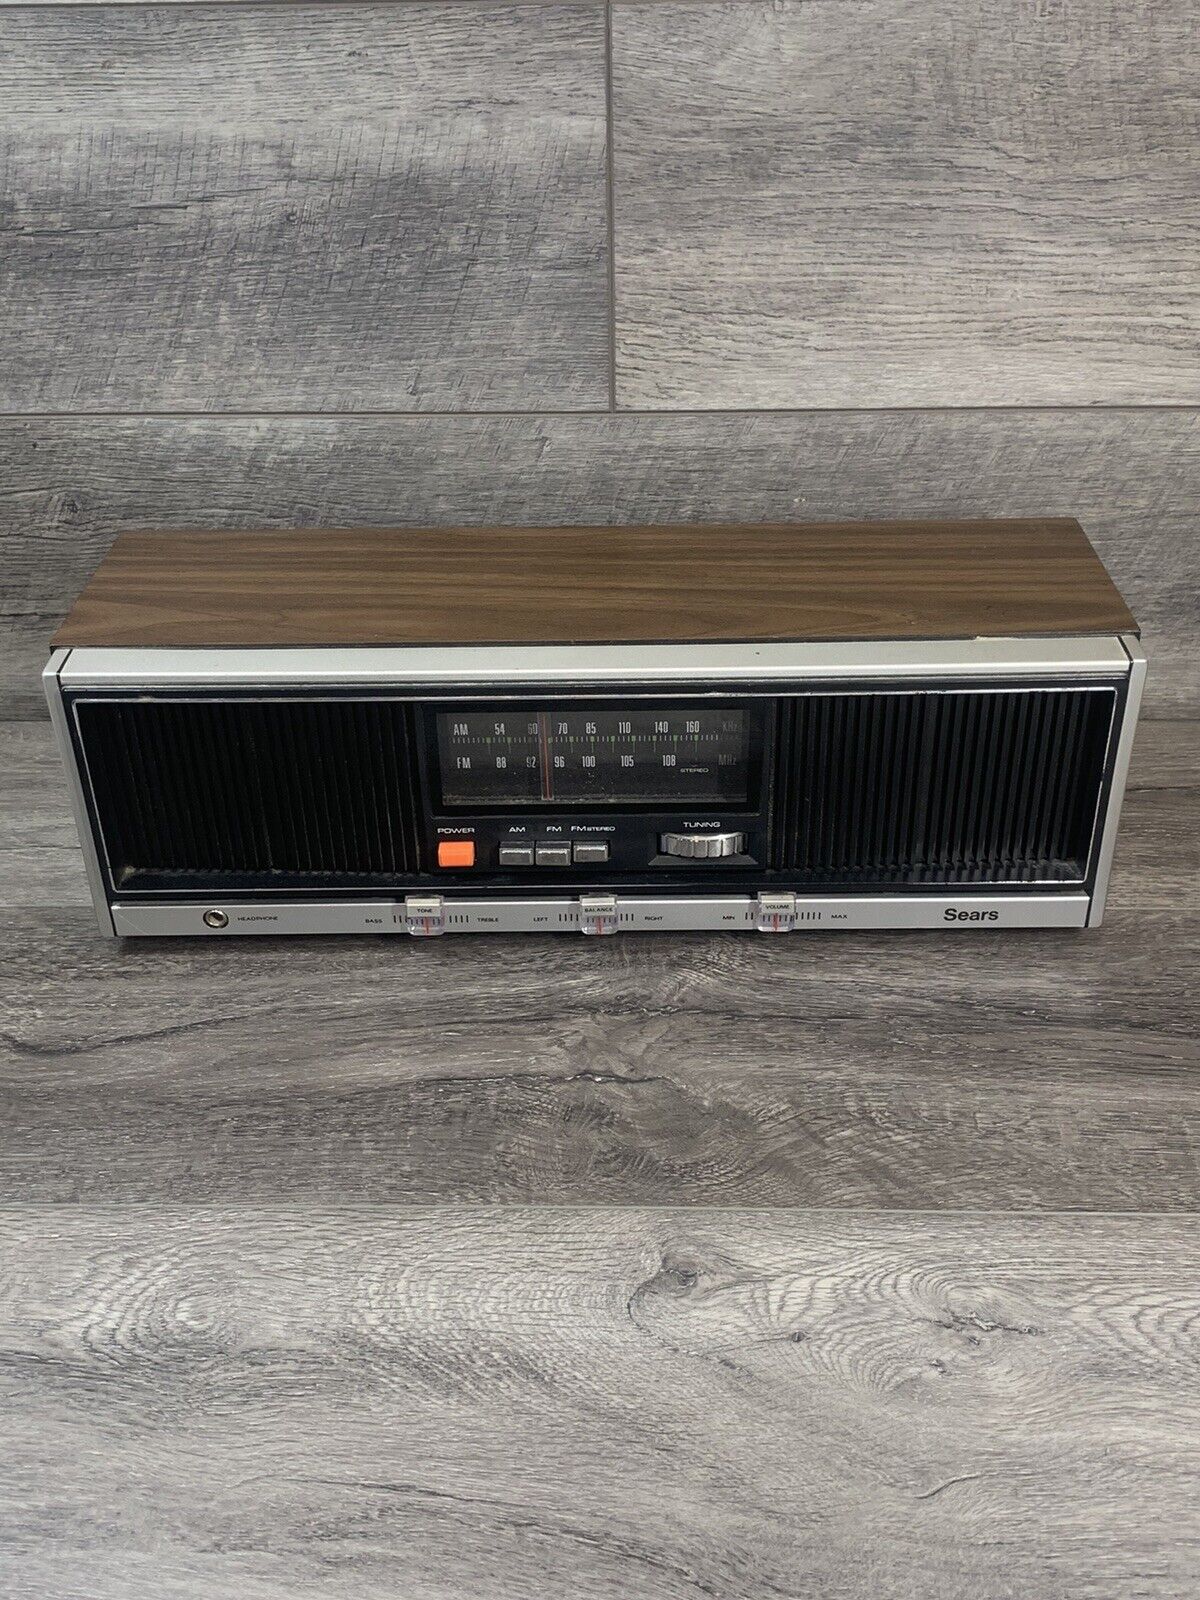 Vintage Sears AM/FM Radio Model 667.23580700 Tested Works